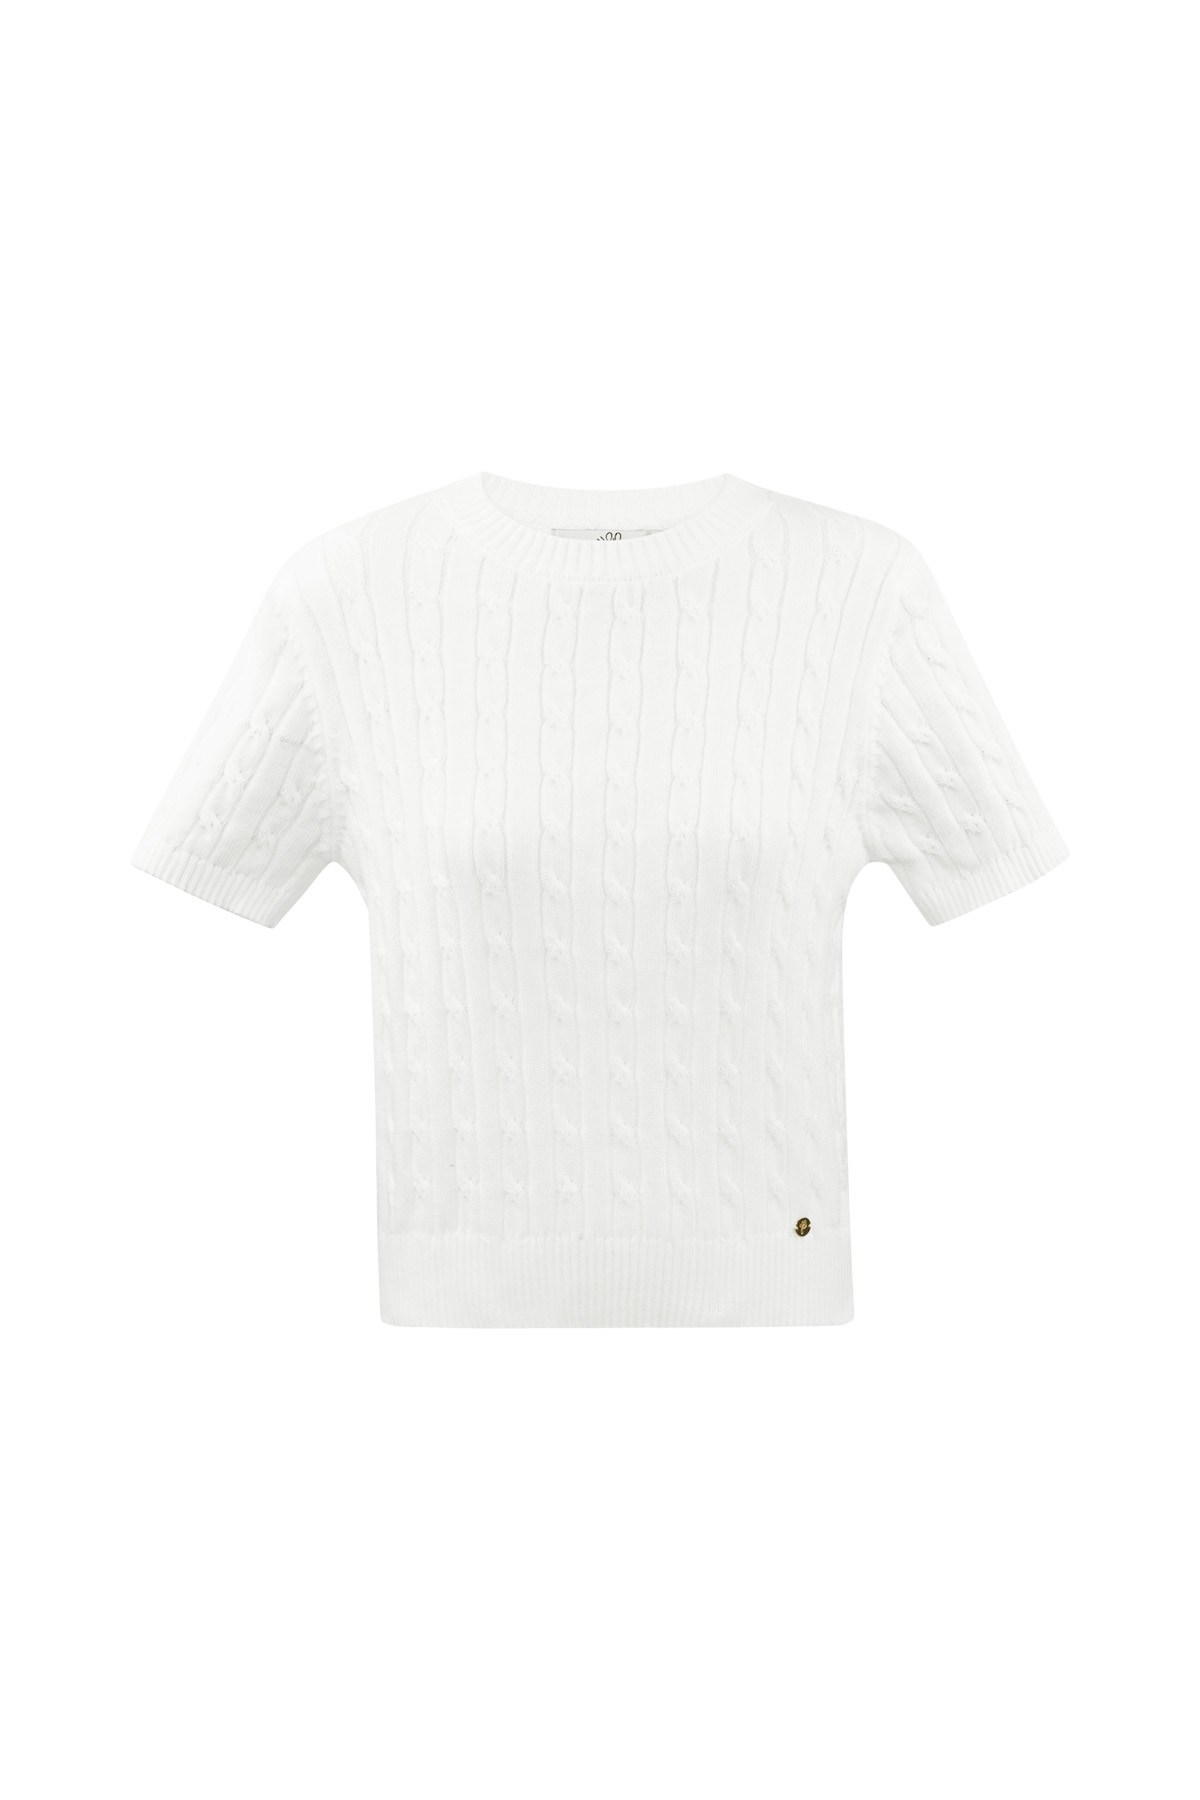 Jersey de punto con trenzas y manga corta pequeño/mediano – blanco